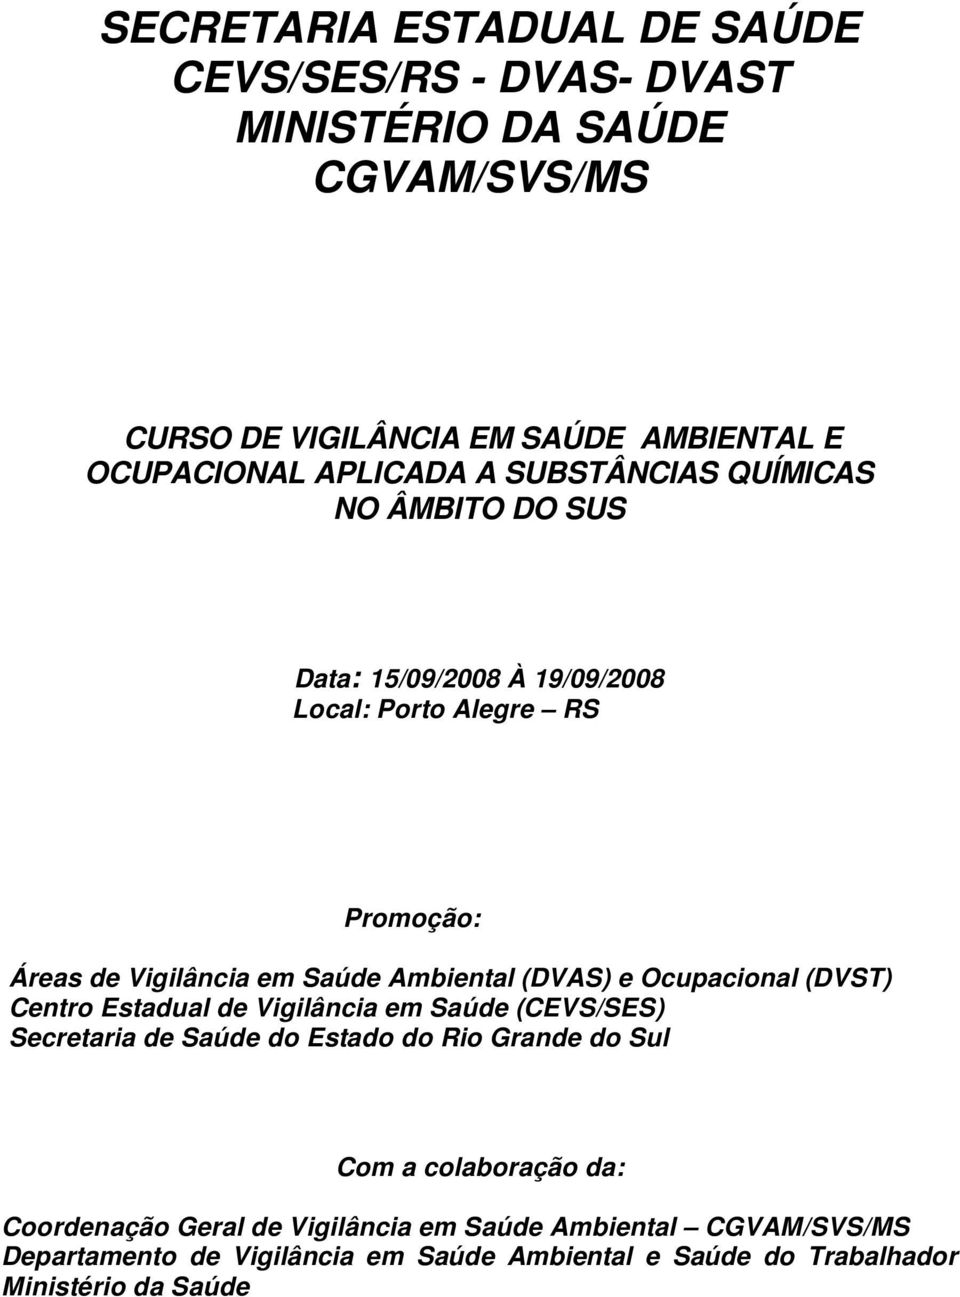 Ambiental (DVAS) e Ocupacional (DVST) Centro Estadual de Vigilância em Saúde (CEVS/SES) Secretaria de Saúde do Estado do Rio Grande do Sul Com a